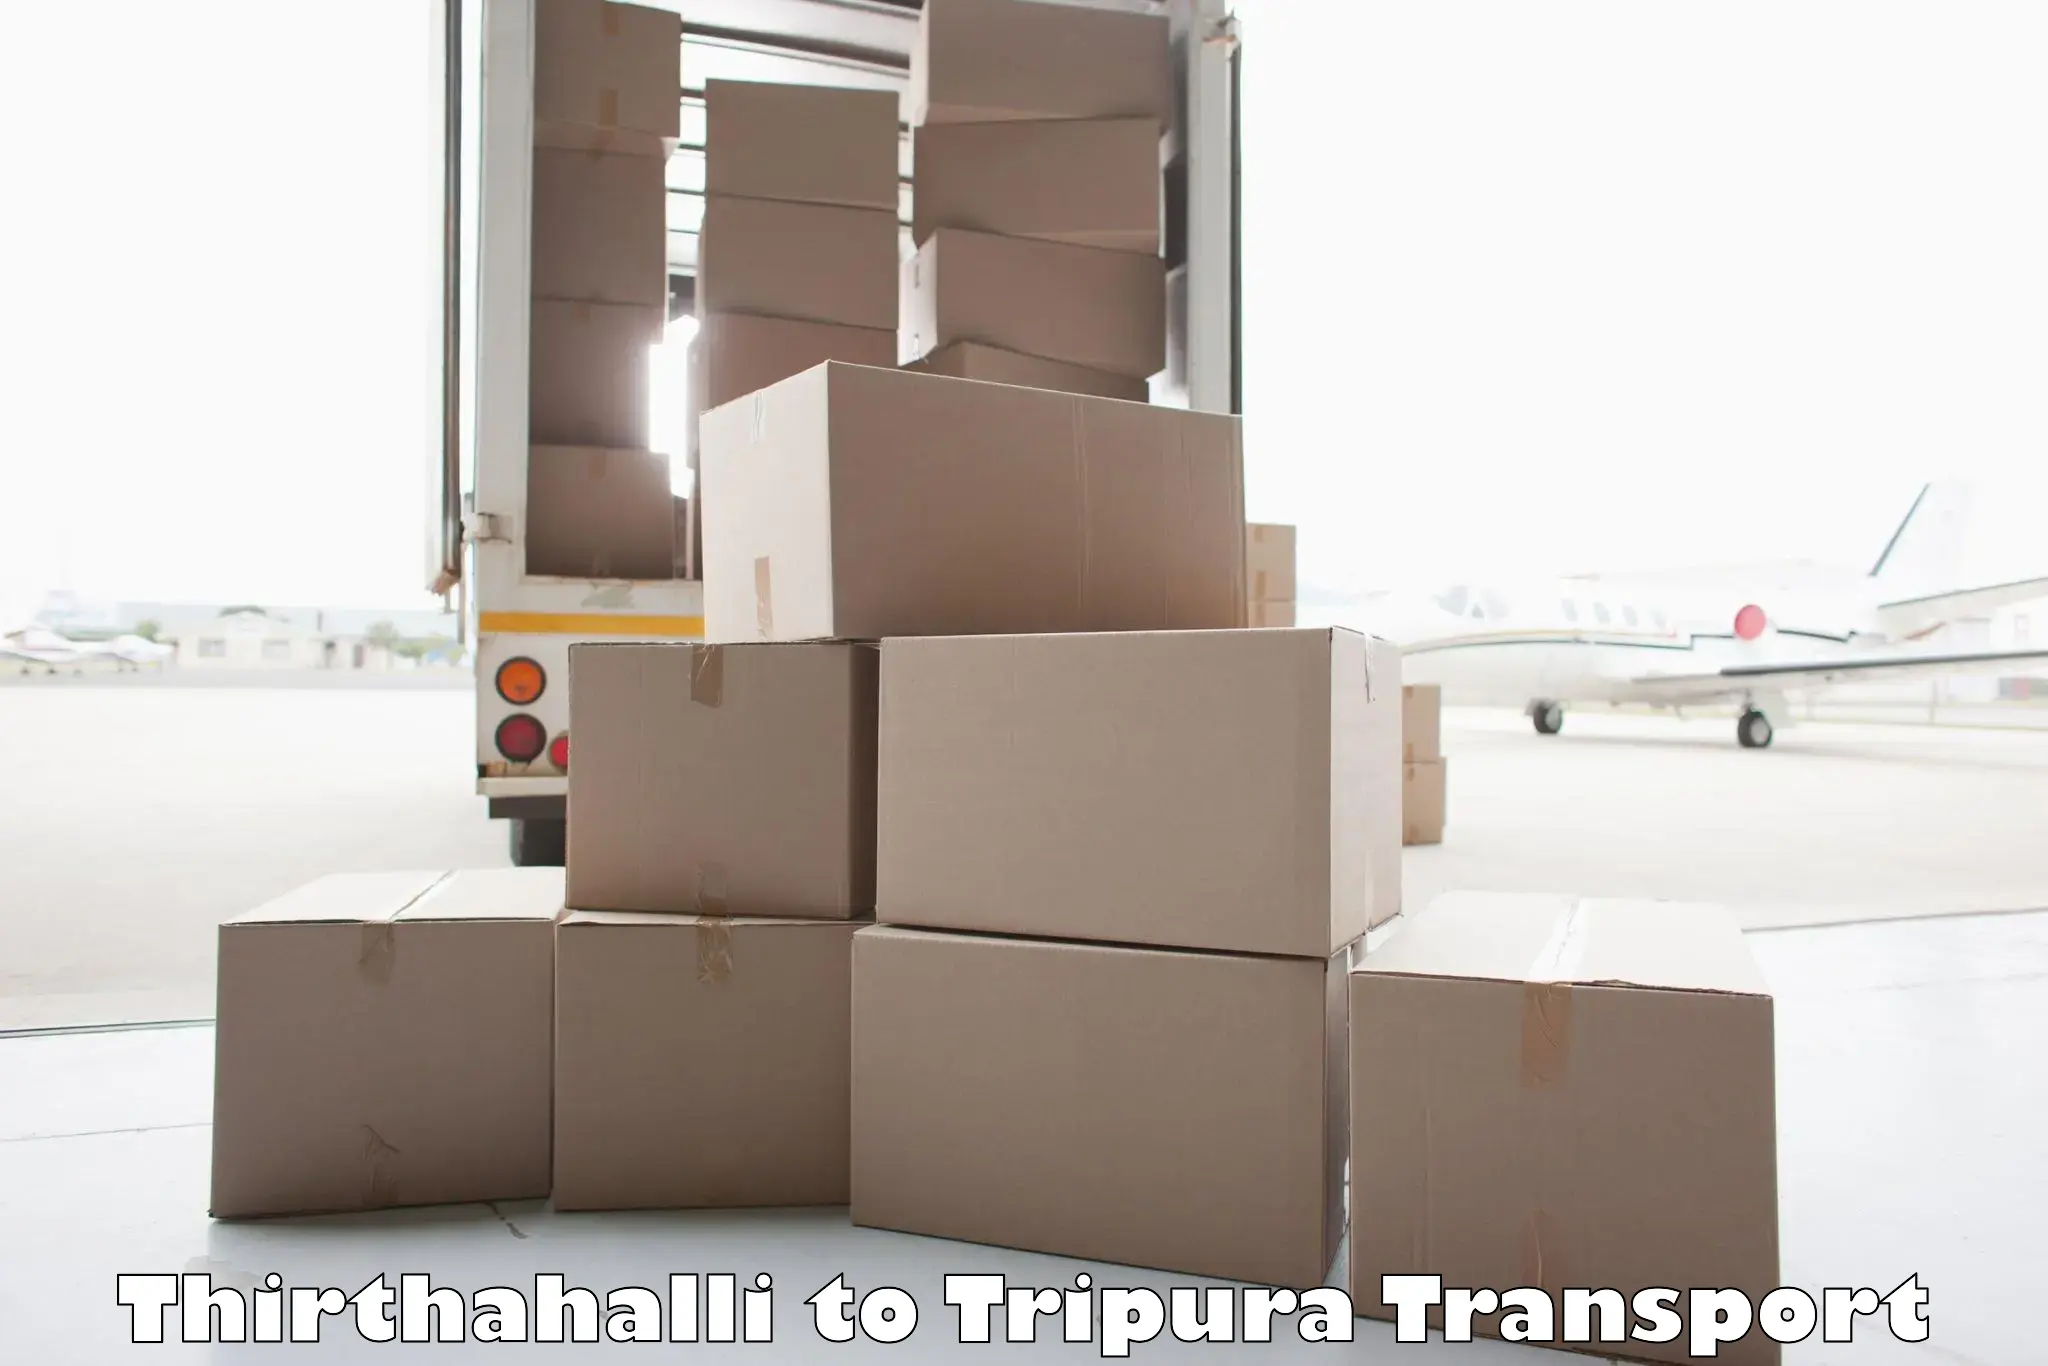 Truck transport companies in India Thirthahalli to IIIT Agartala